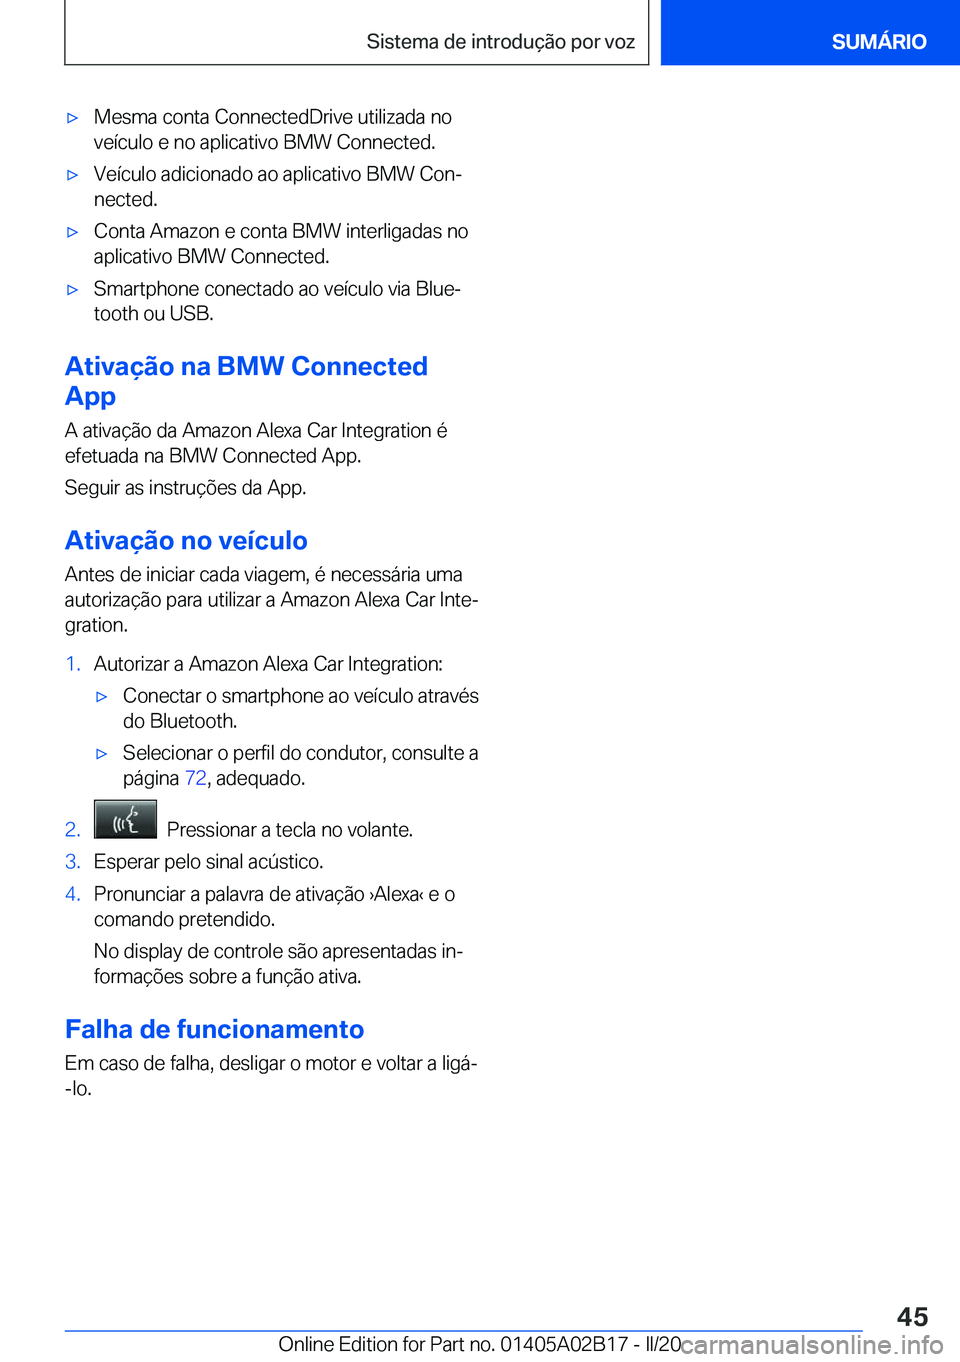 BMW X1 2020  Manual do condutor (in Portuguese) x�M�e�s�m�a��c�o�n�t�a��C�o�n�n�e�c�t�e�d�D�r�i�v�e��u�t�i�l�i�z�a�d�a��n�o�v�e�